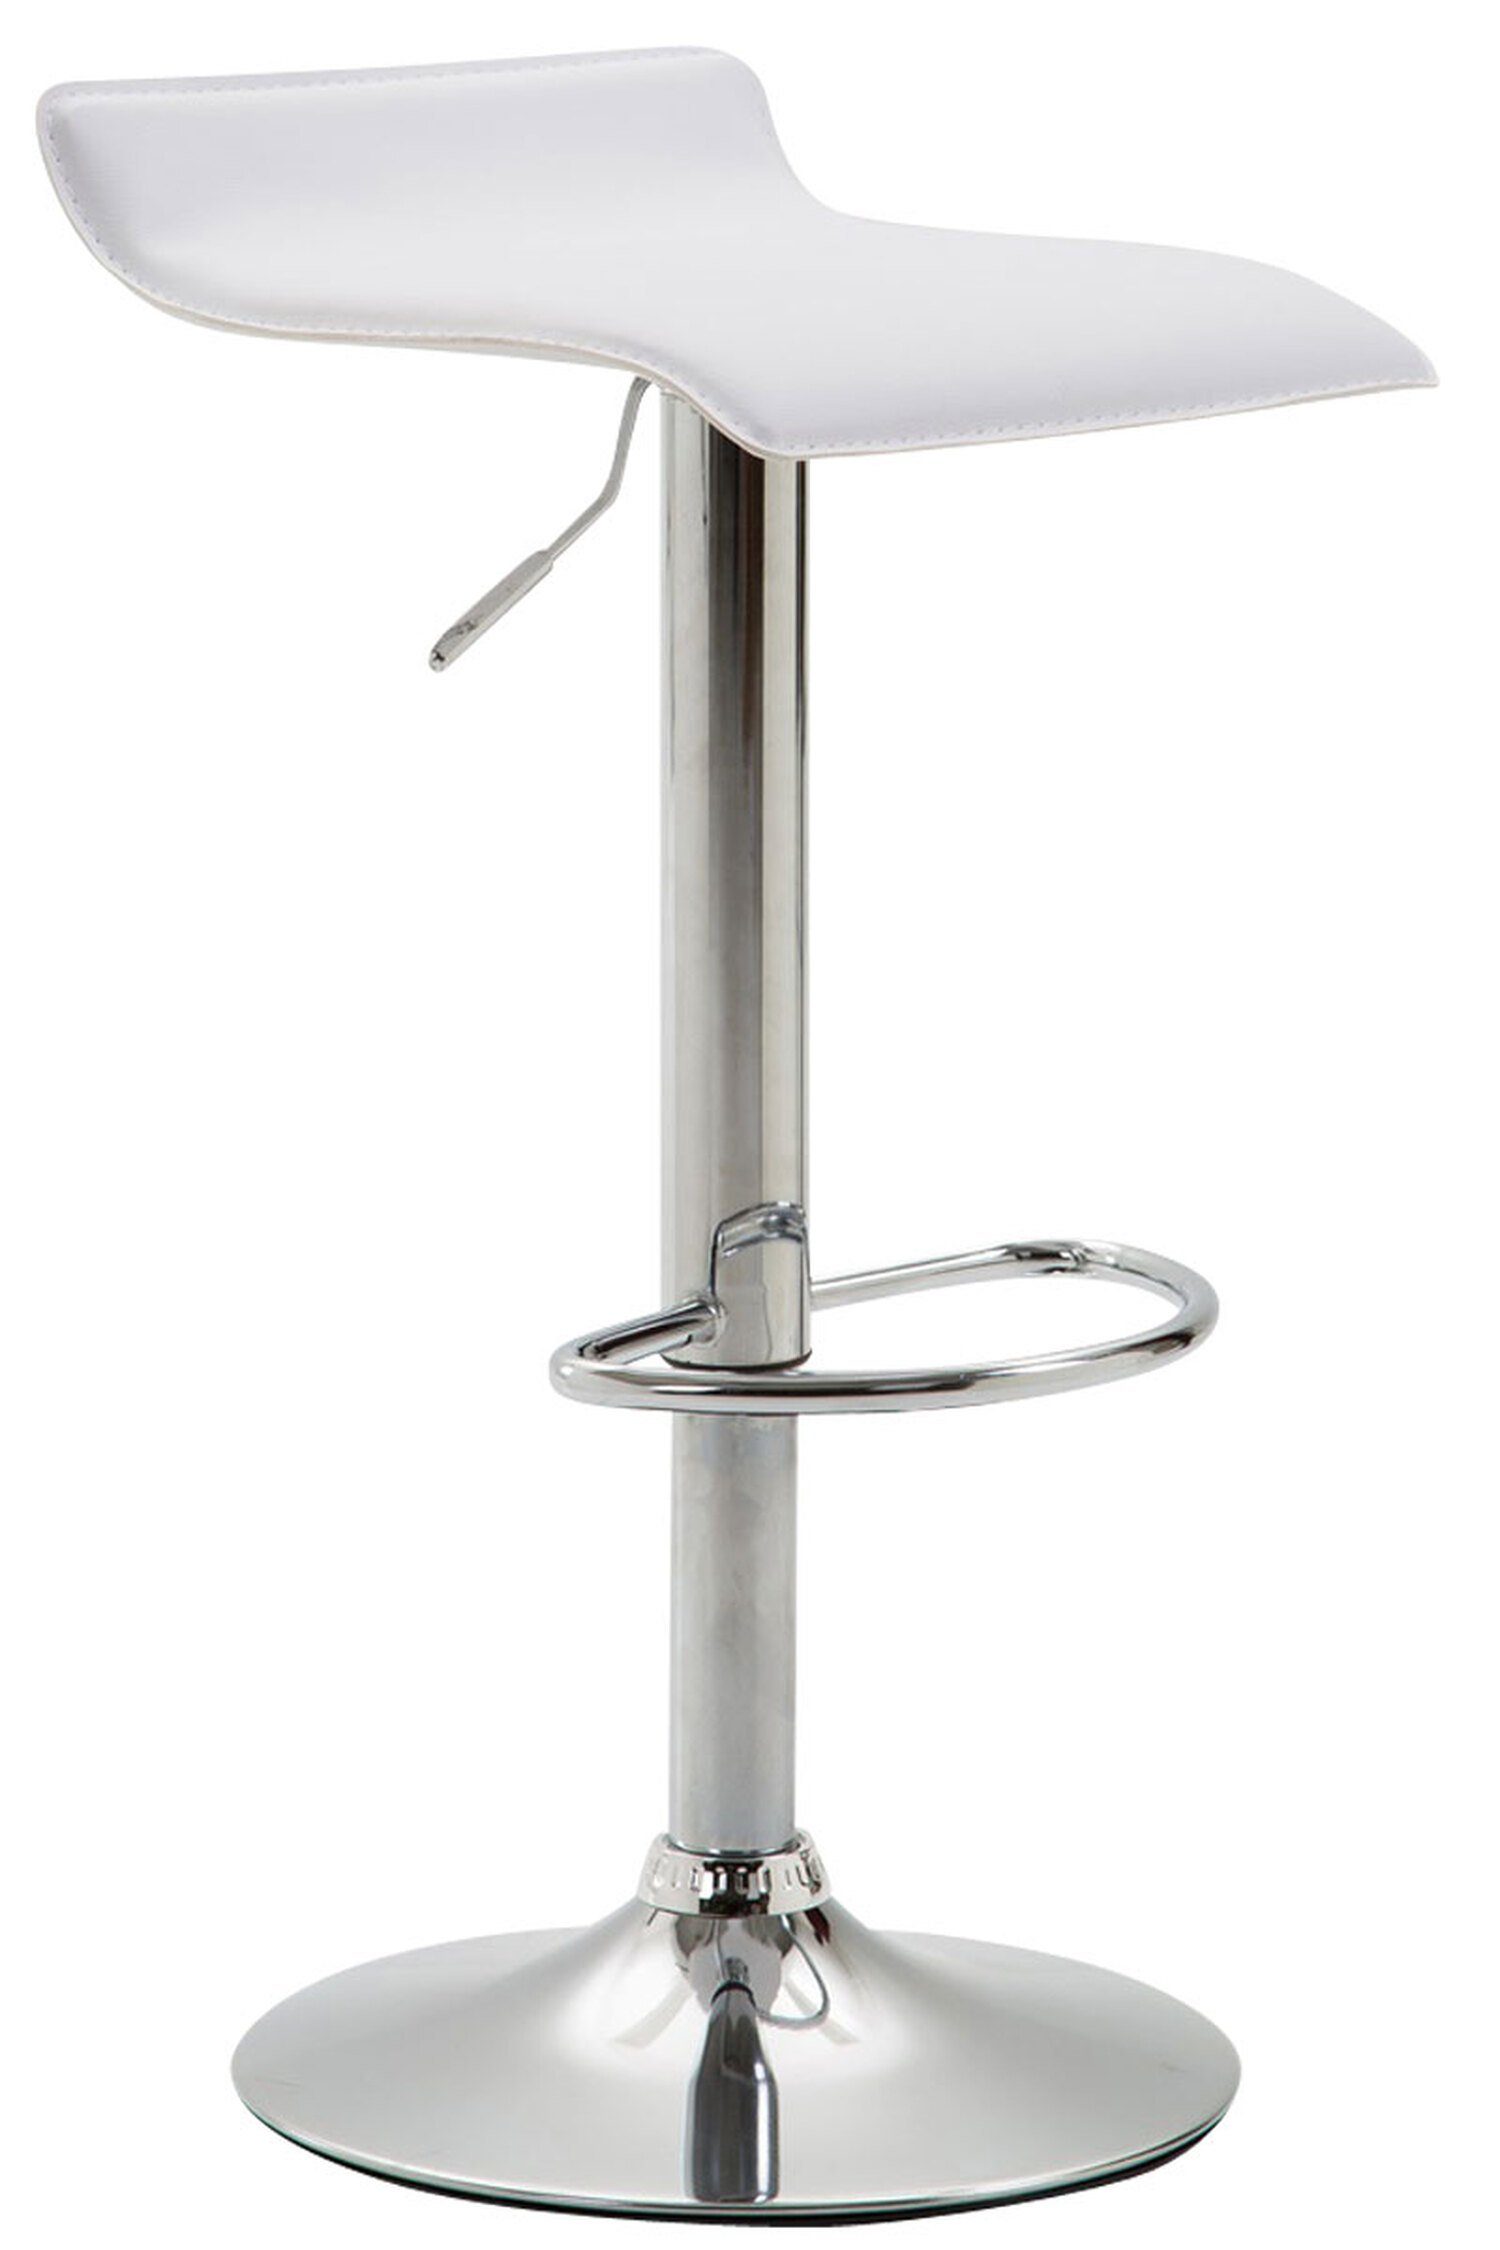 TPFLiving Barhocker Dynasty2 (mit Fußstütze - Barstuhl höhenverstellbar - Hocker für Theke & Küche), 360° drehbar - chromfarbener Stahl - Sitzfläche: Kunstleder Weiß